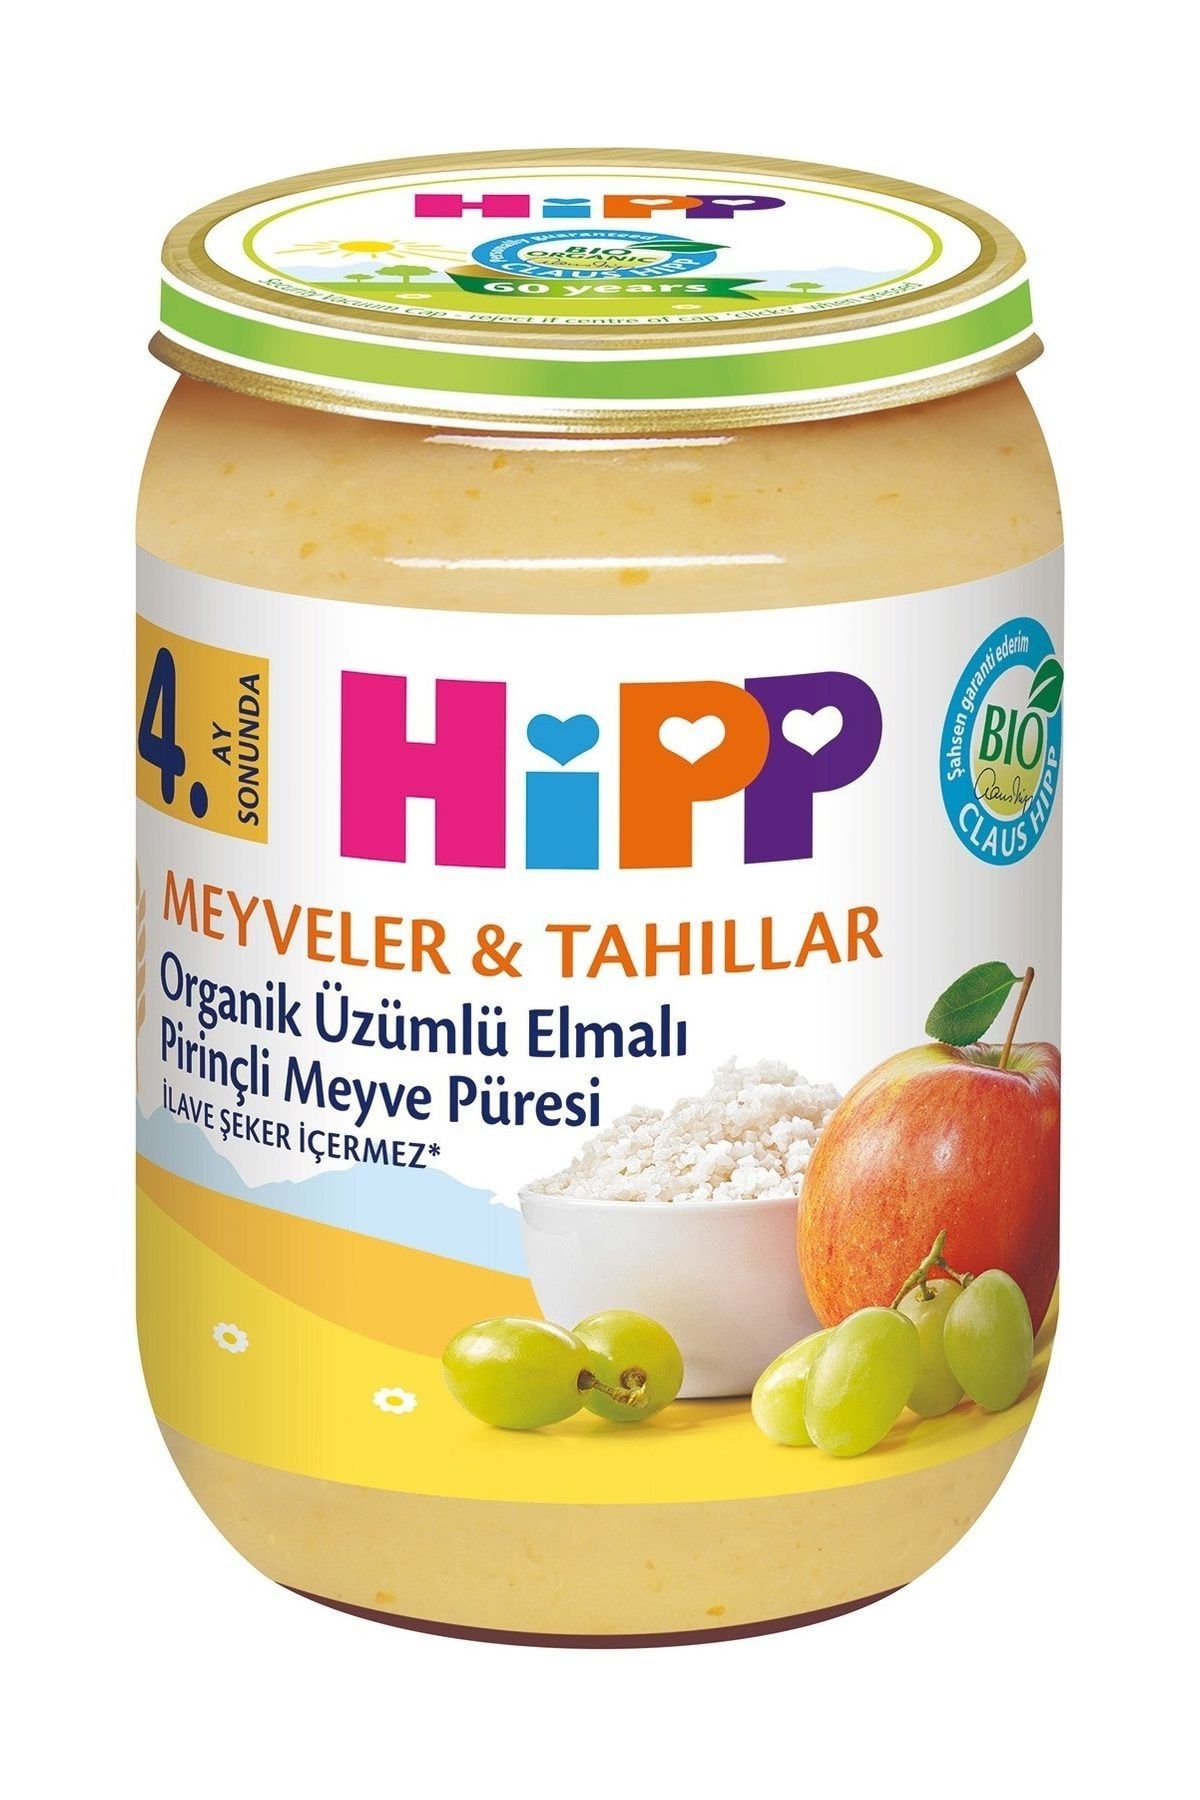 Hipp Organik Üzümlü Elmalı Pirinçli Kavanoz Maması 190 gr